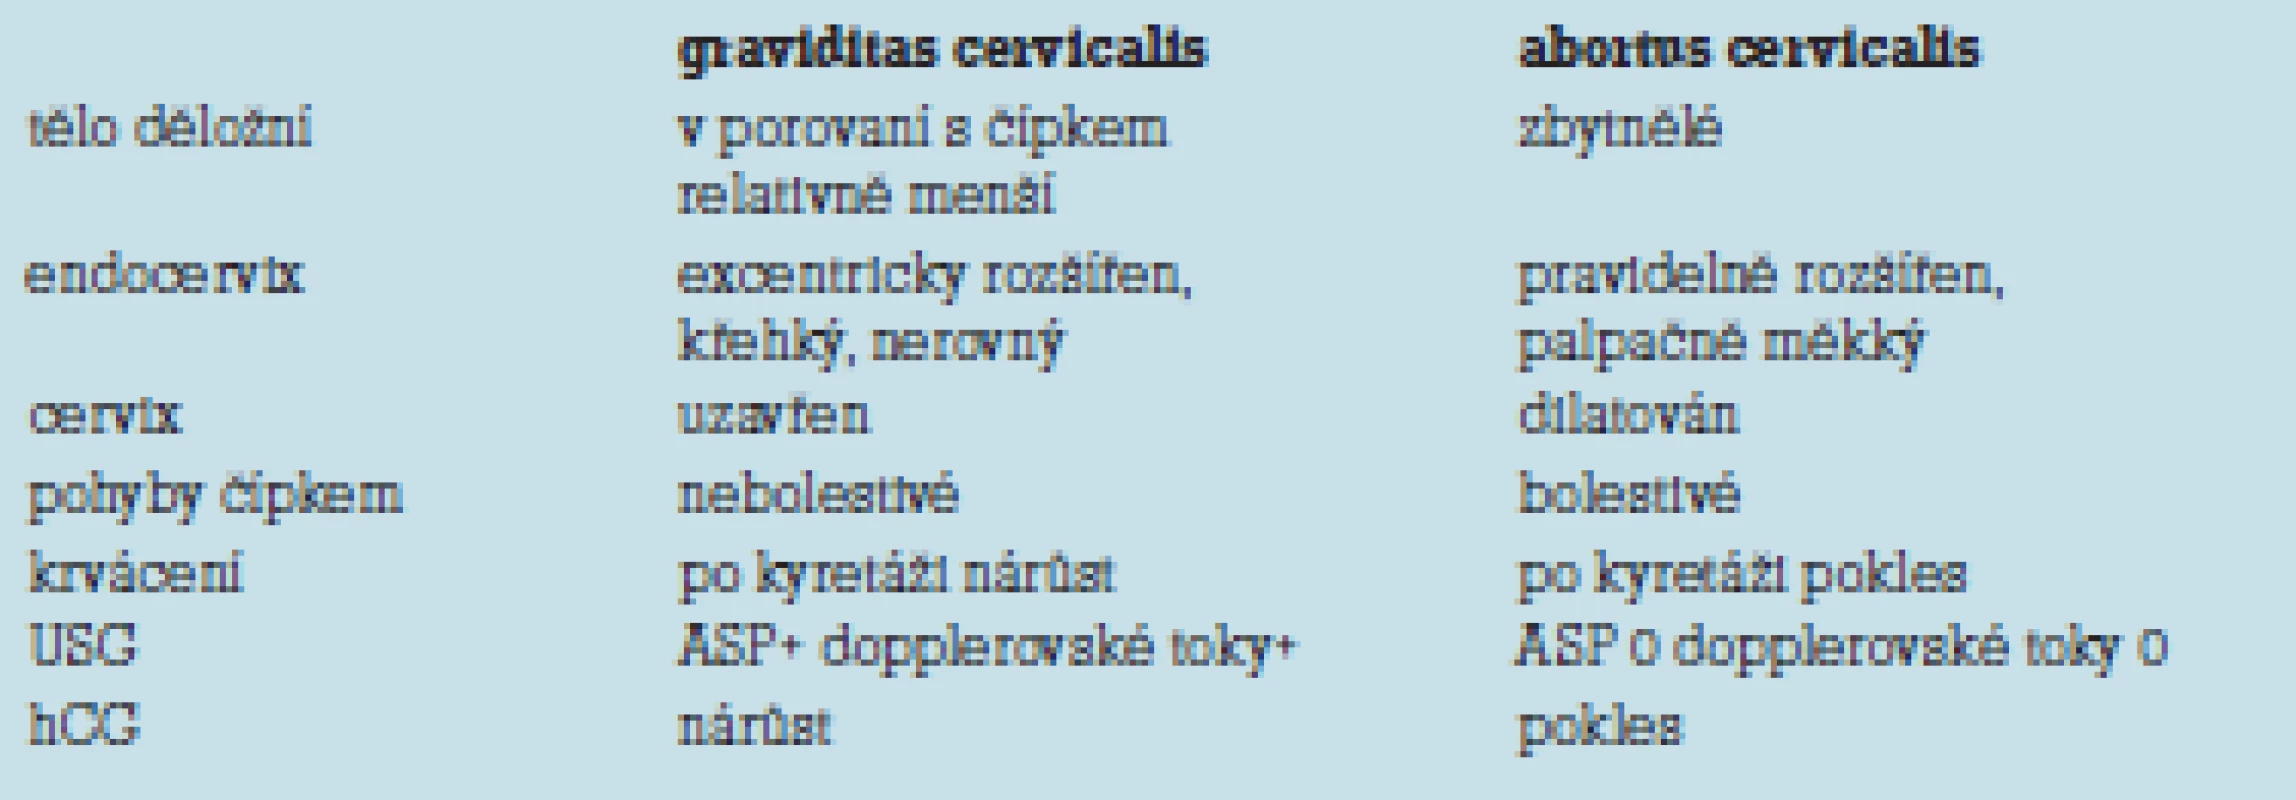 Diferenciální diagnostika cervikální gravidity a cervikálního abortu.